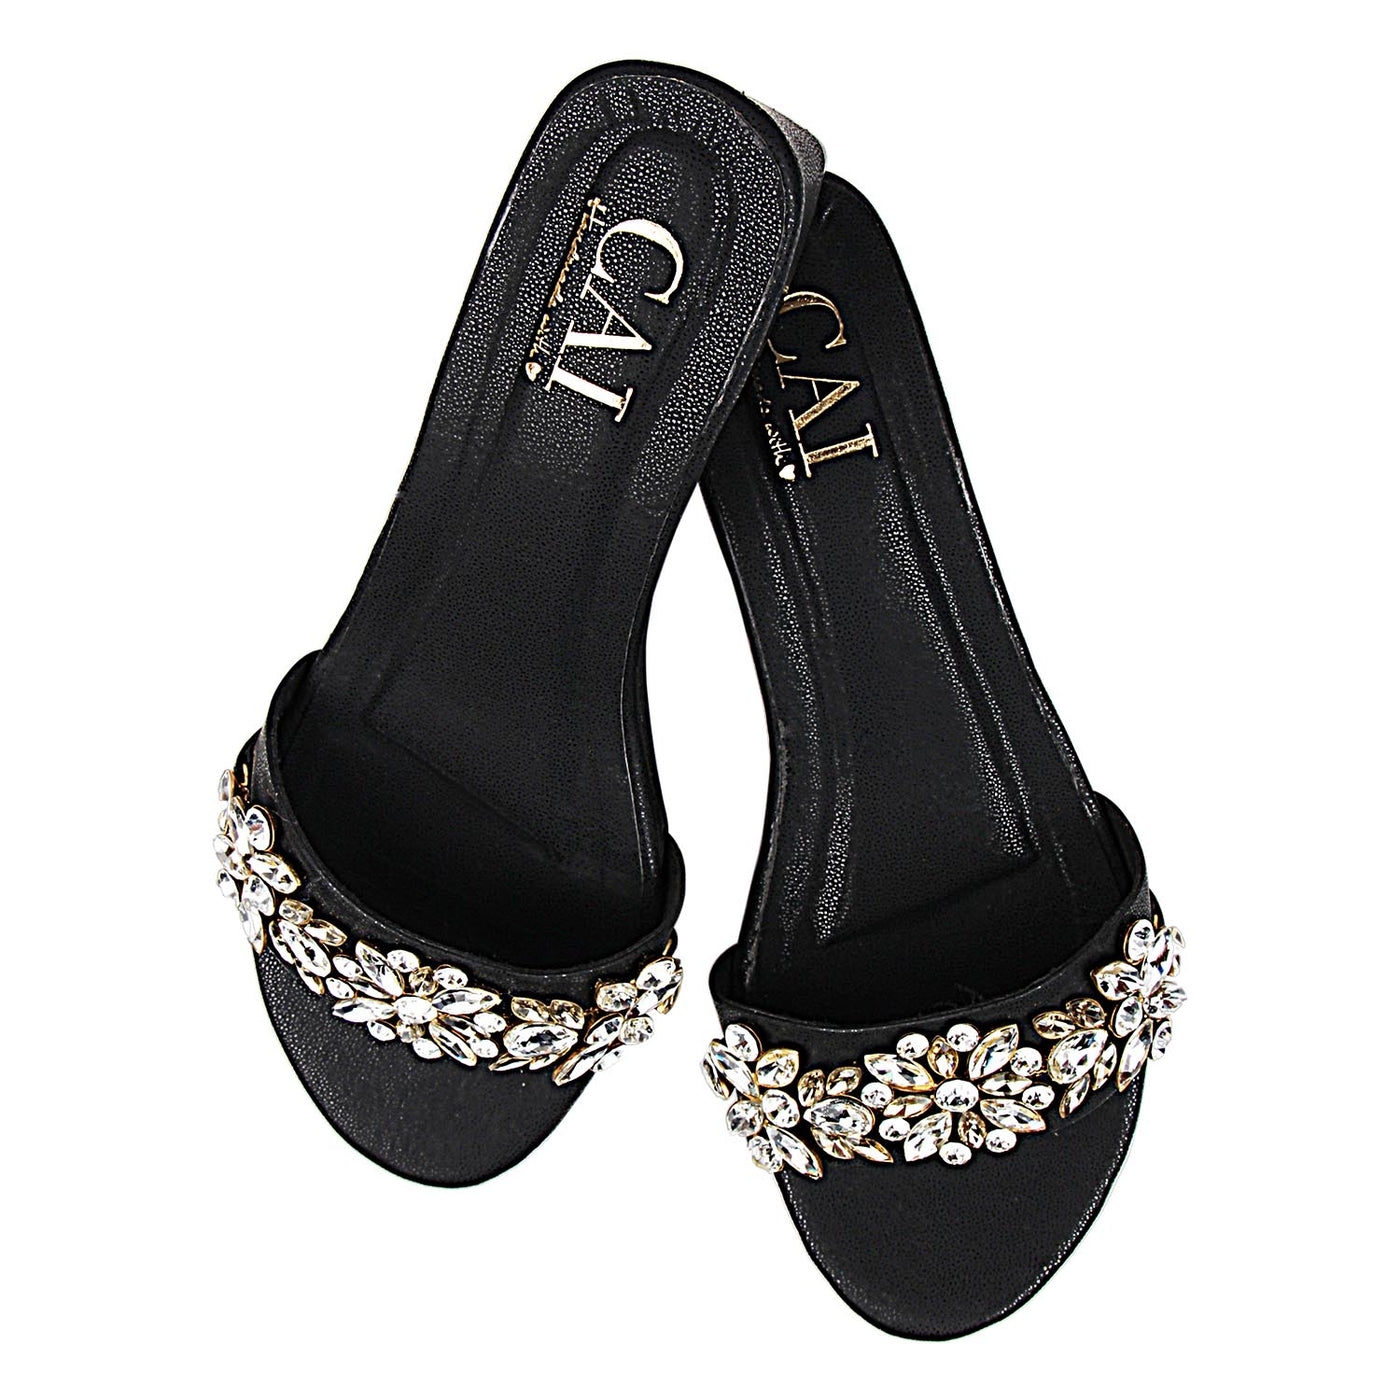 Black Embellished Heels Online India